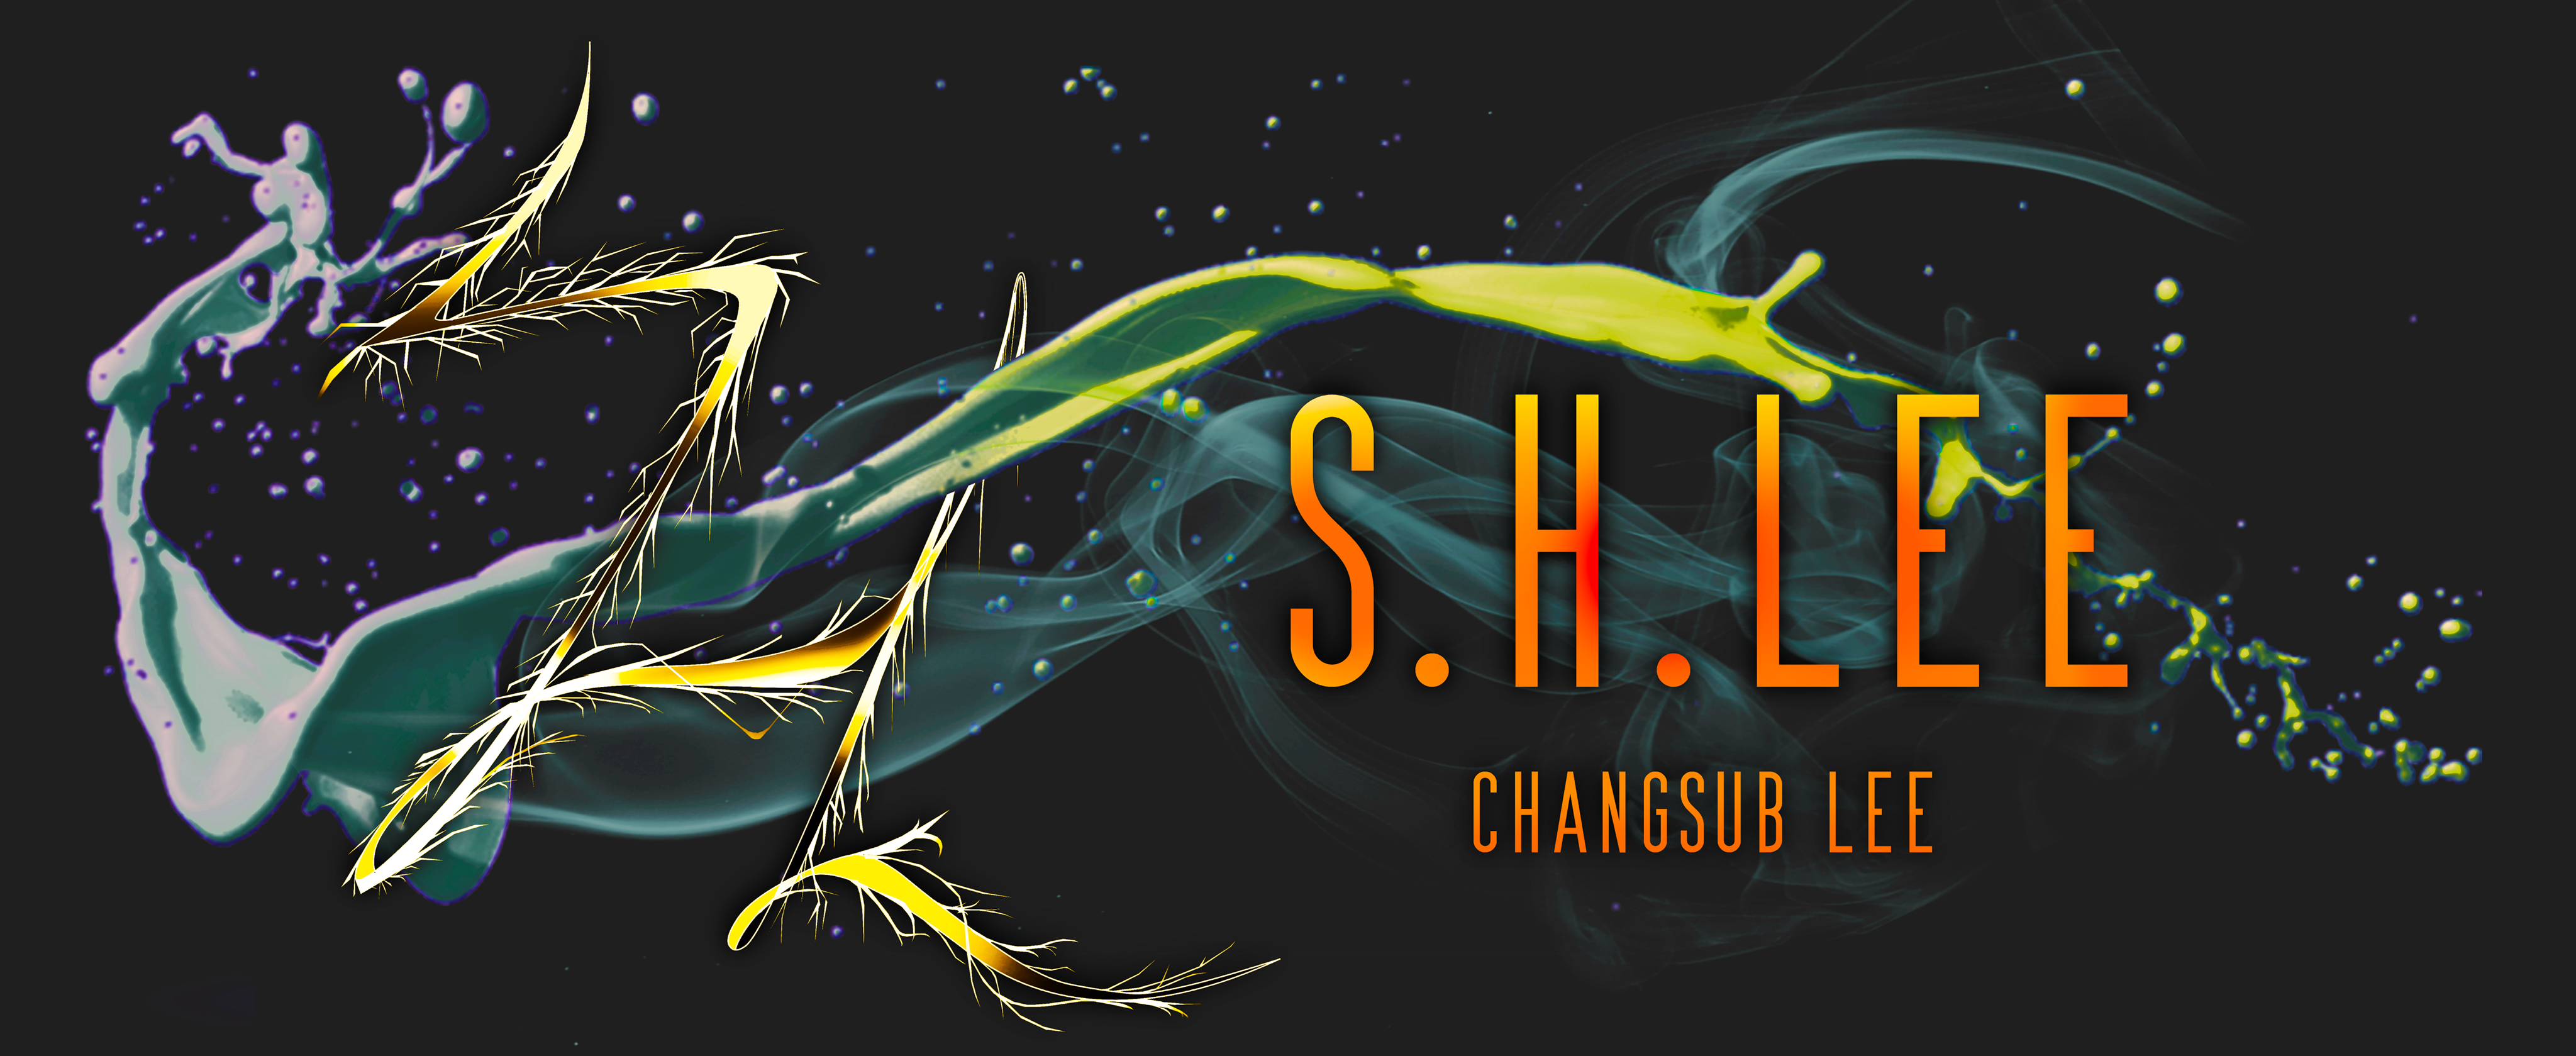 S.H. Lee's Official Website